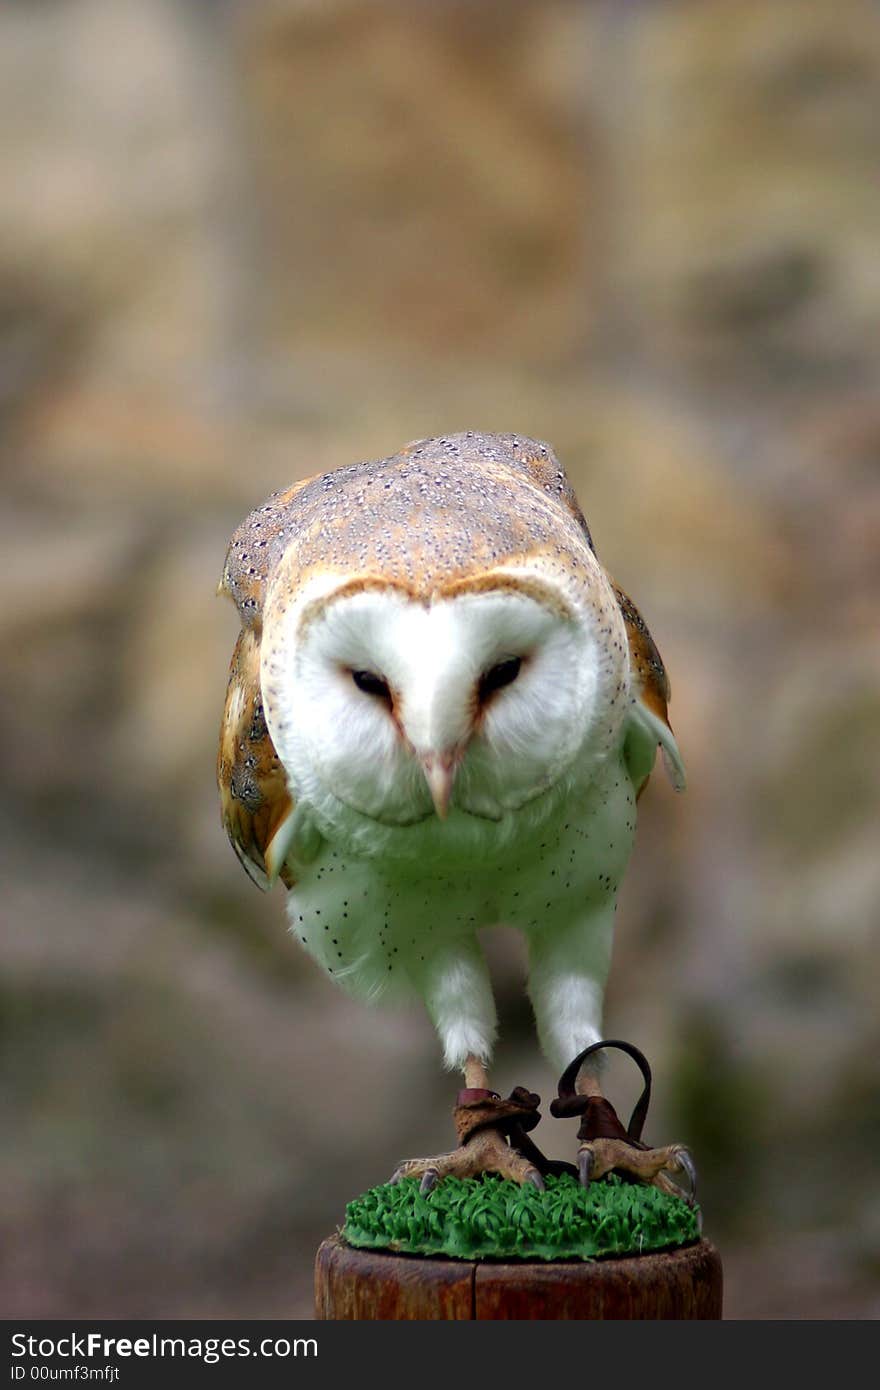 Barn Owl on a perch